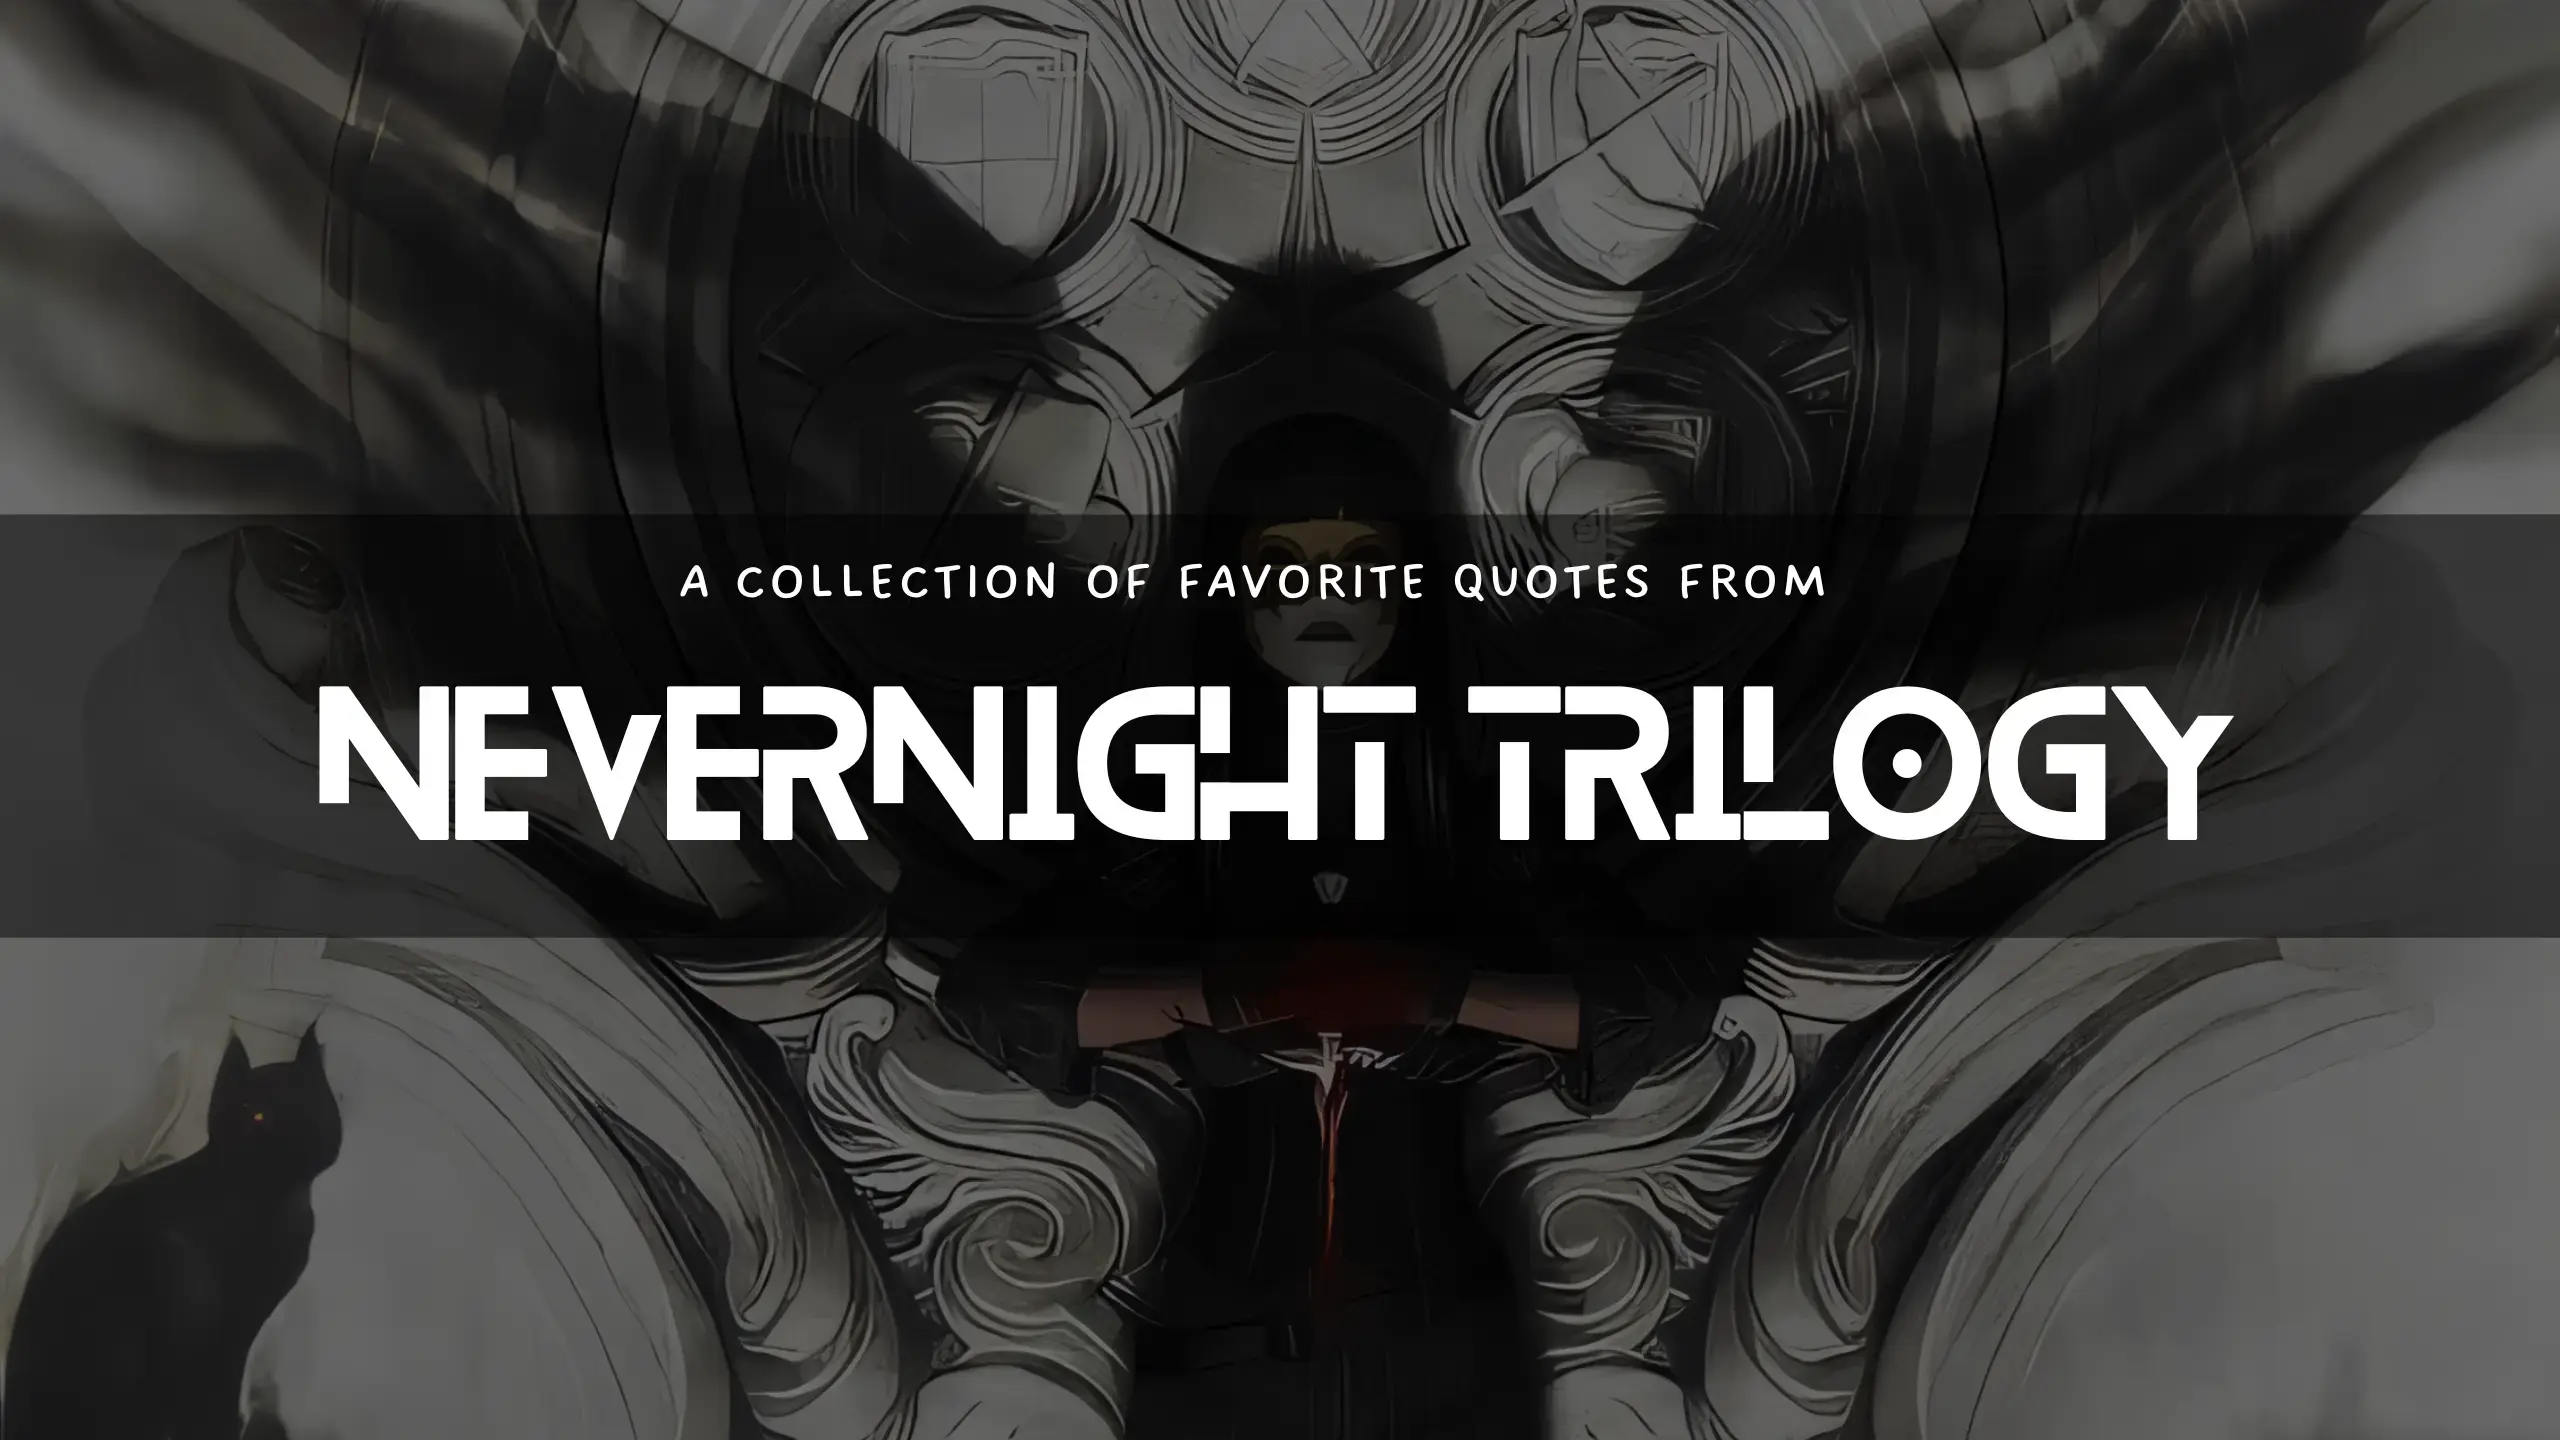 Nevernight Trilogy by Jay Kristoff